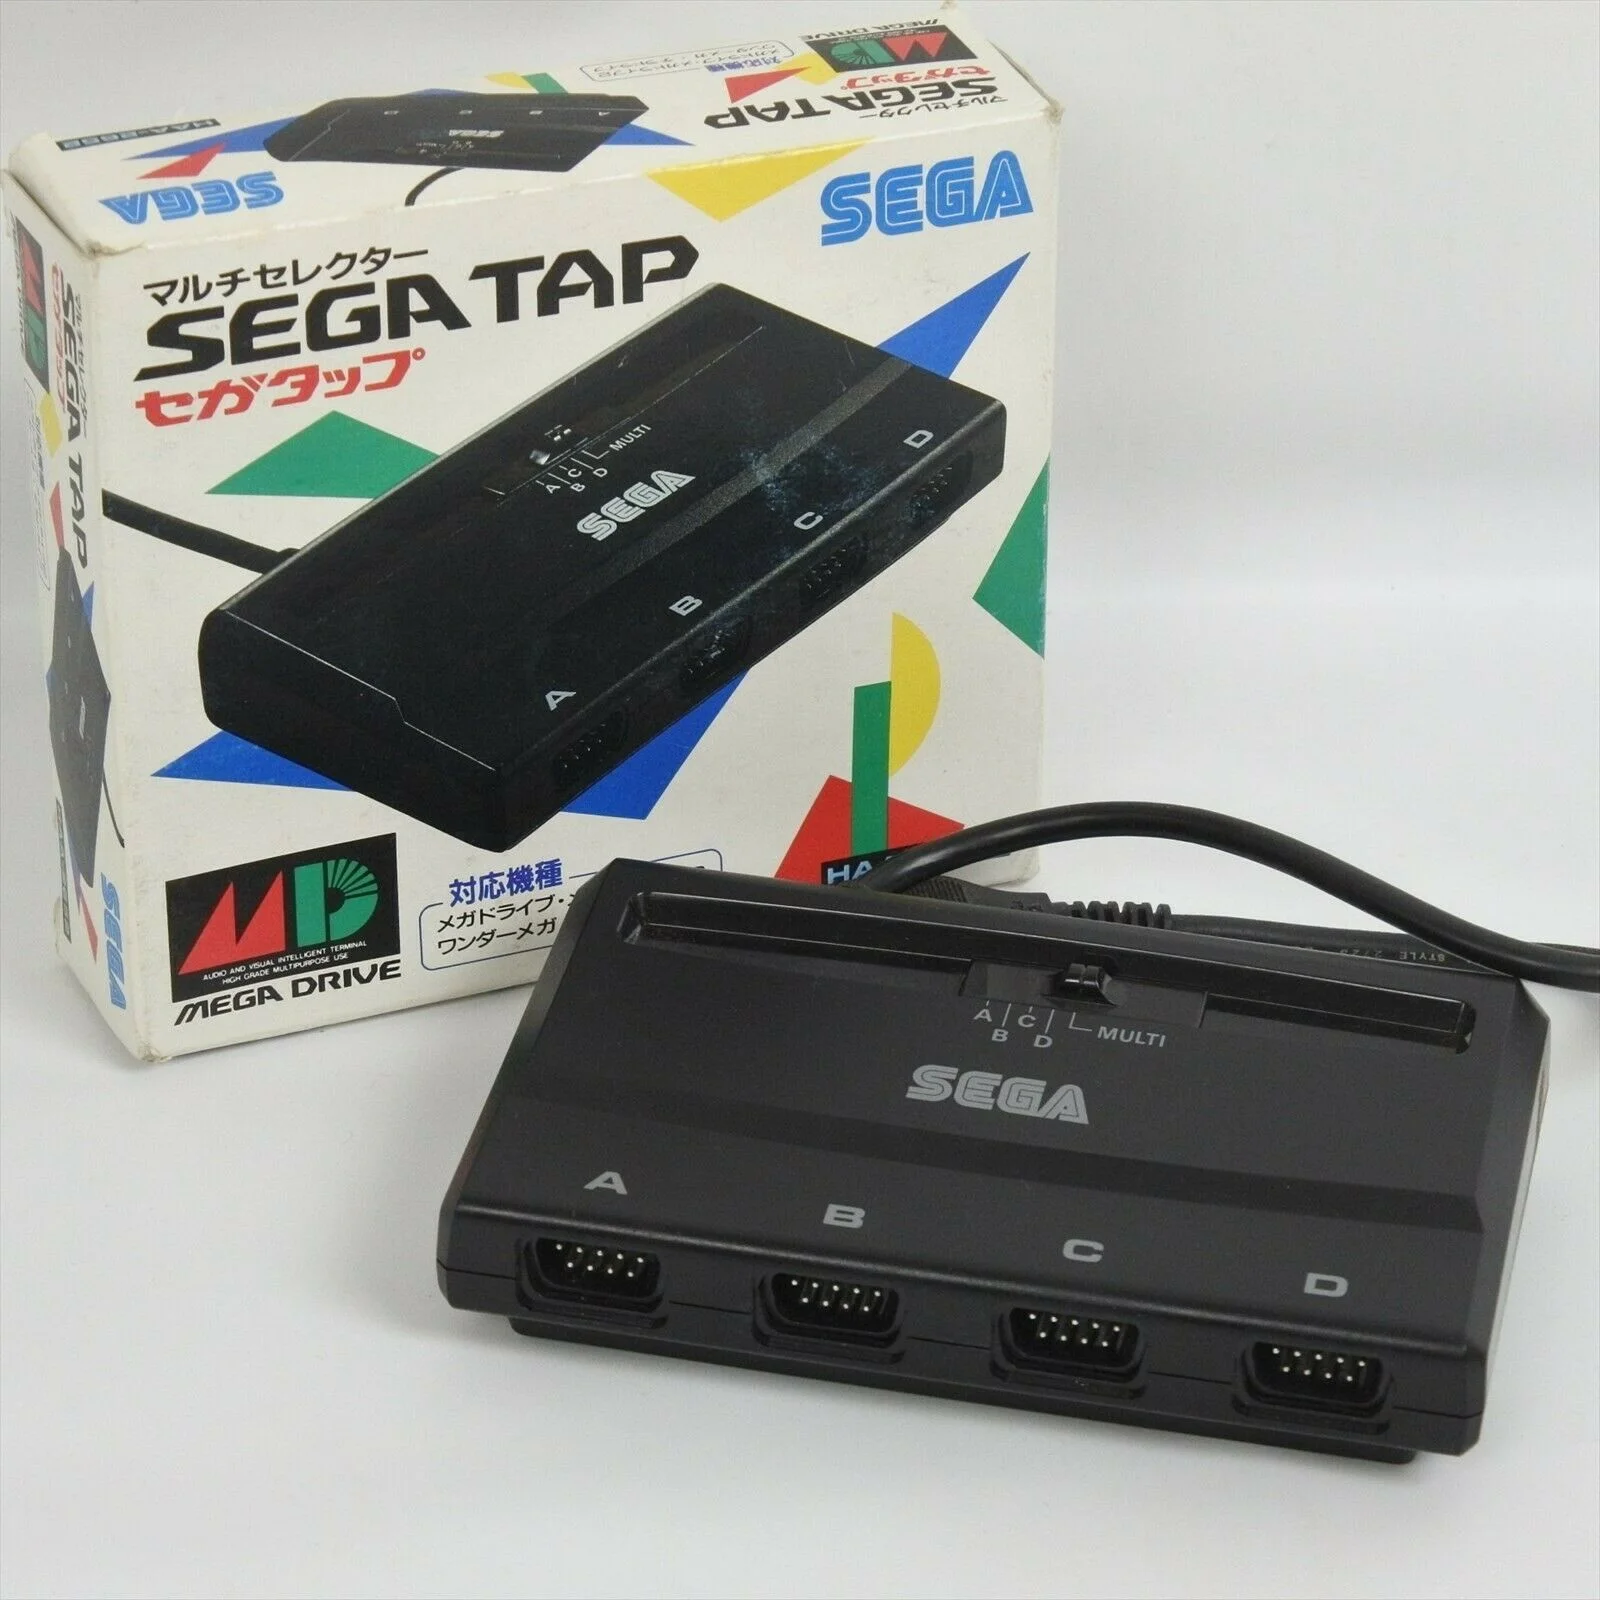  Sega Mega Drive Tap